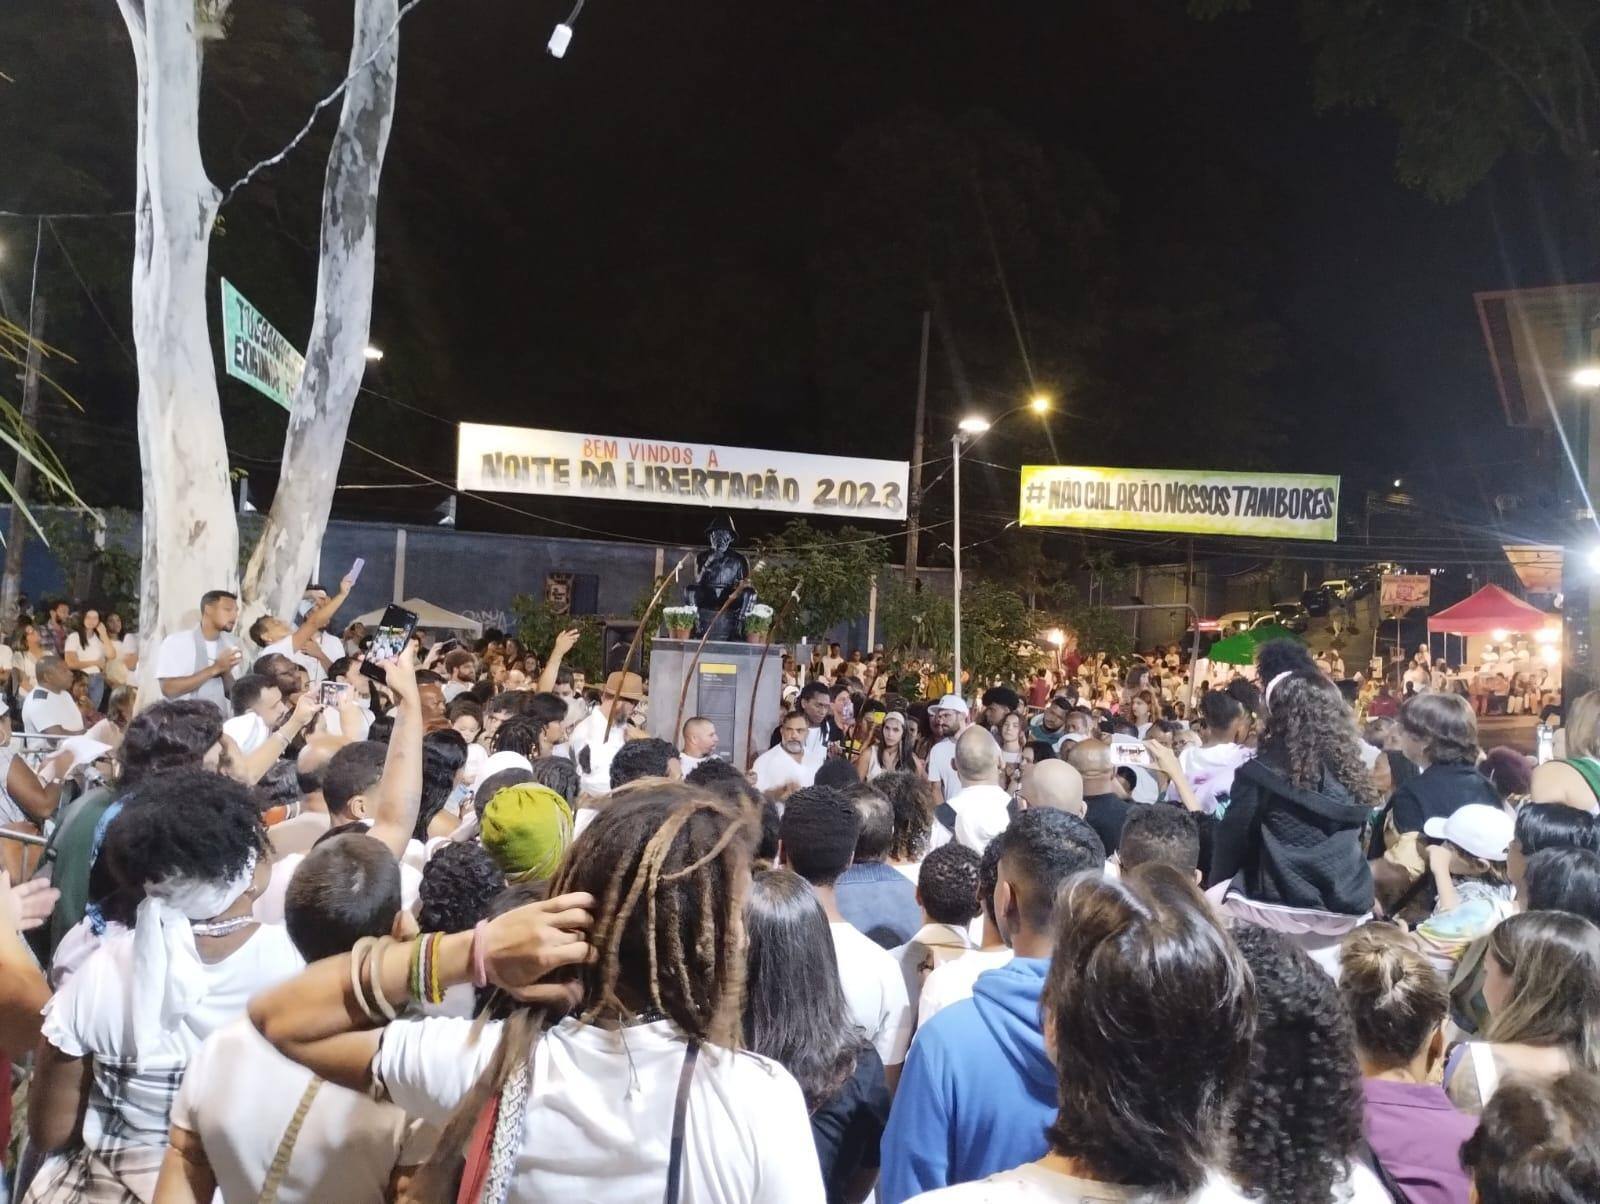 Centenas de pessoas se reuniram entorno de uma roda de capoeira no início do festejo